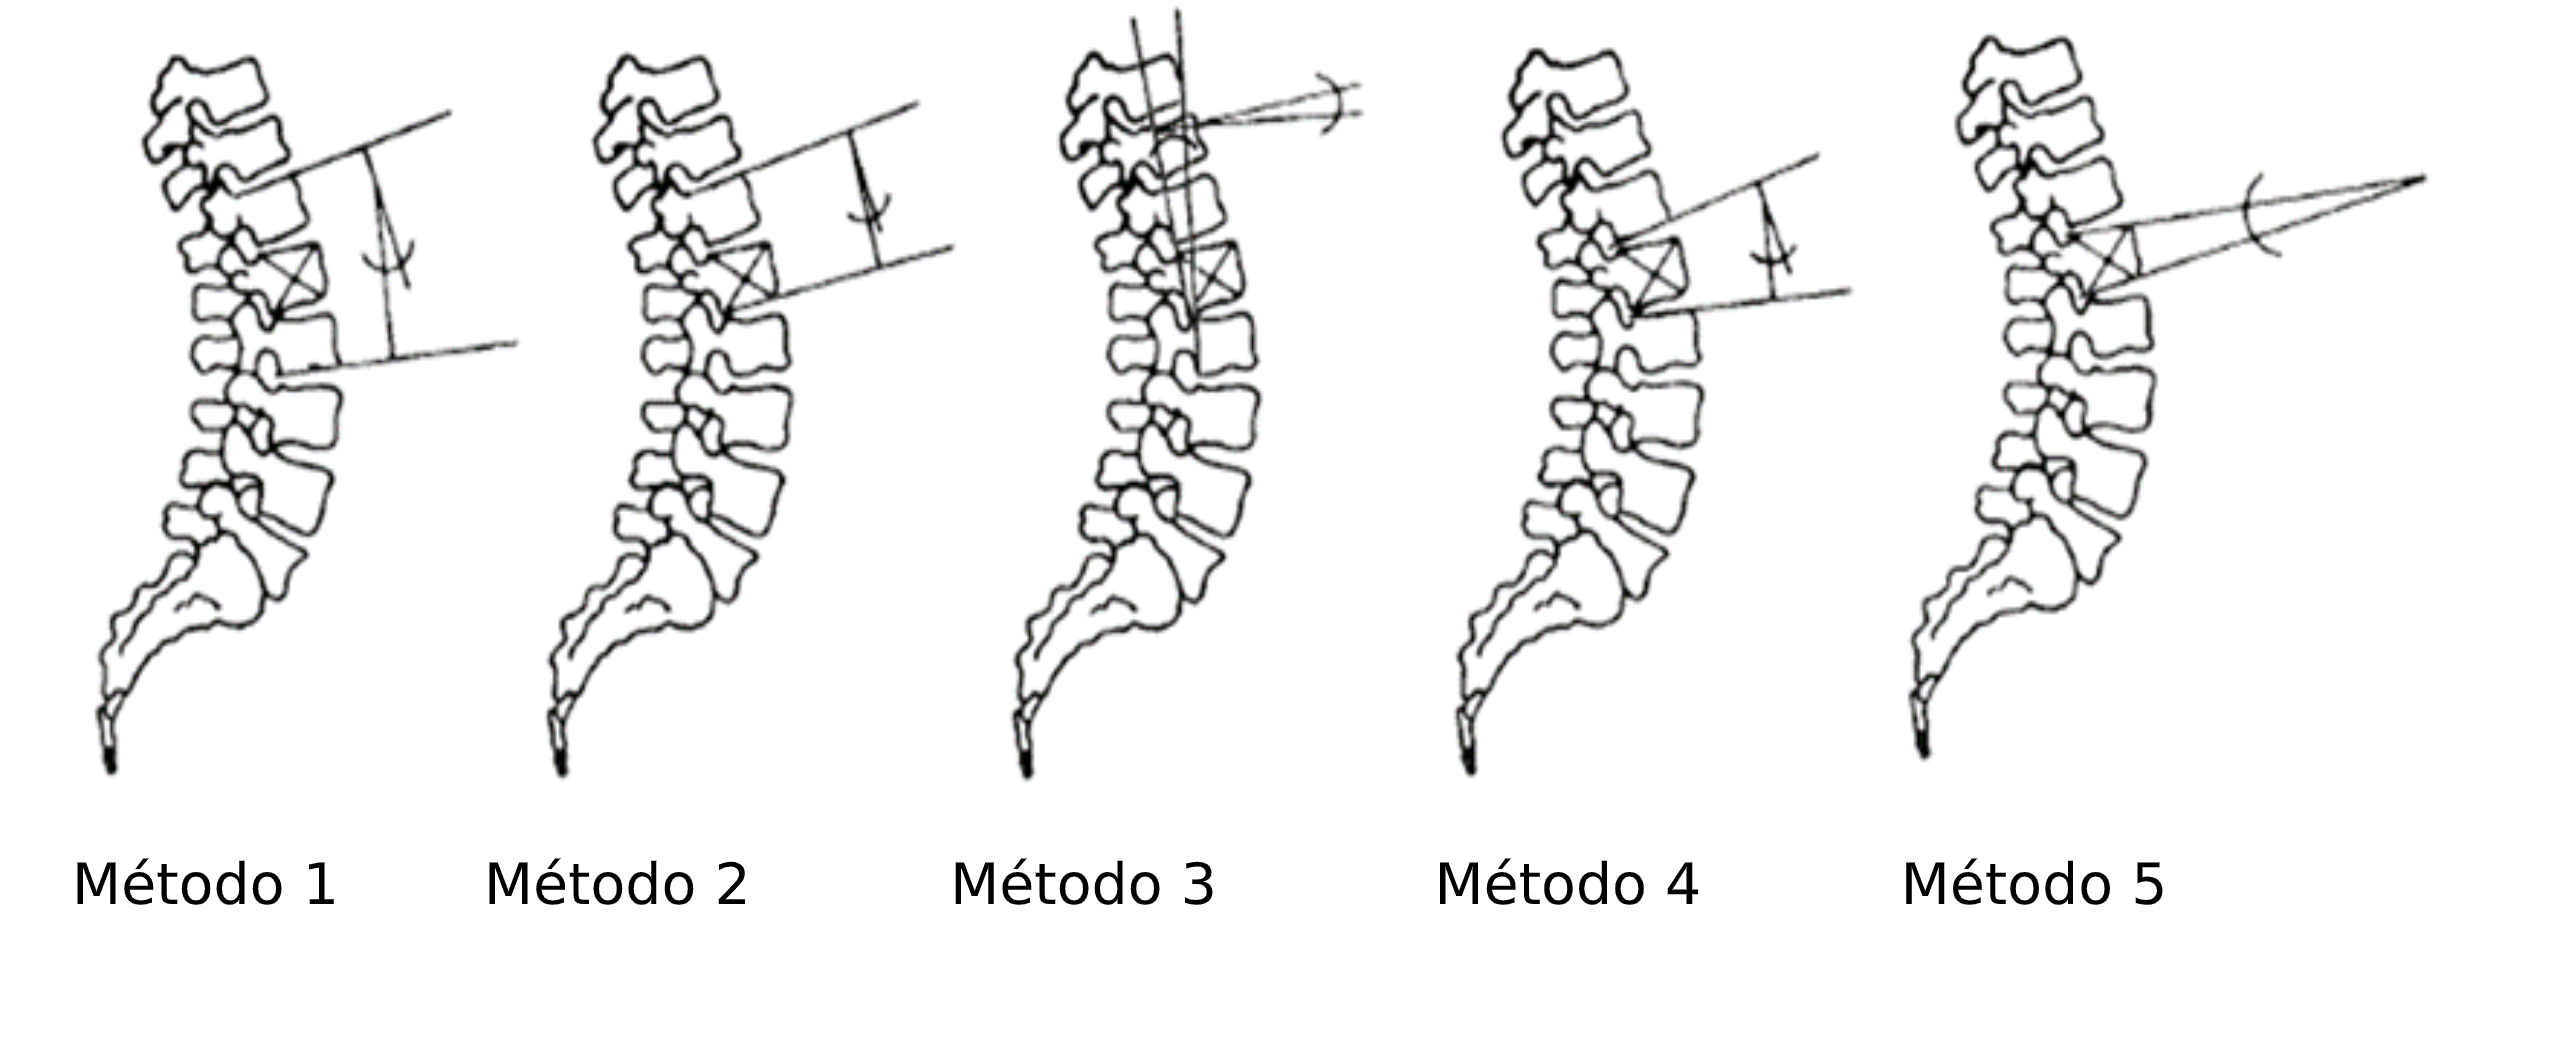 Métodos disponibles para la cuantificación y diagnóstico de fracturas por compresión de fracturas vertebrales (modificado de Kuklo et al., 2001).